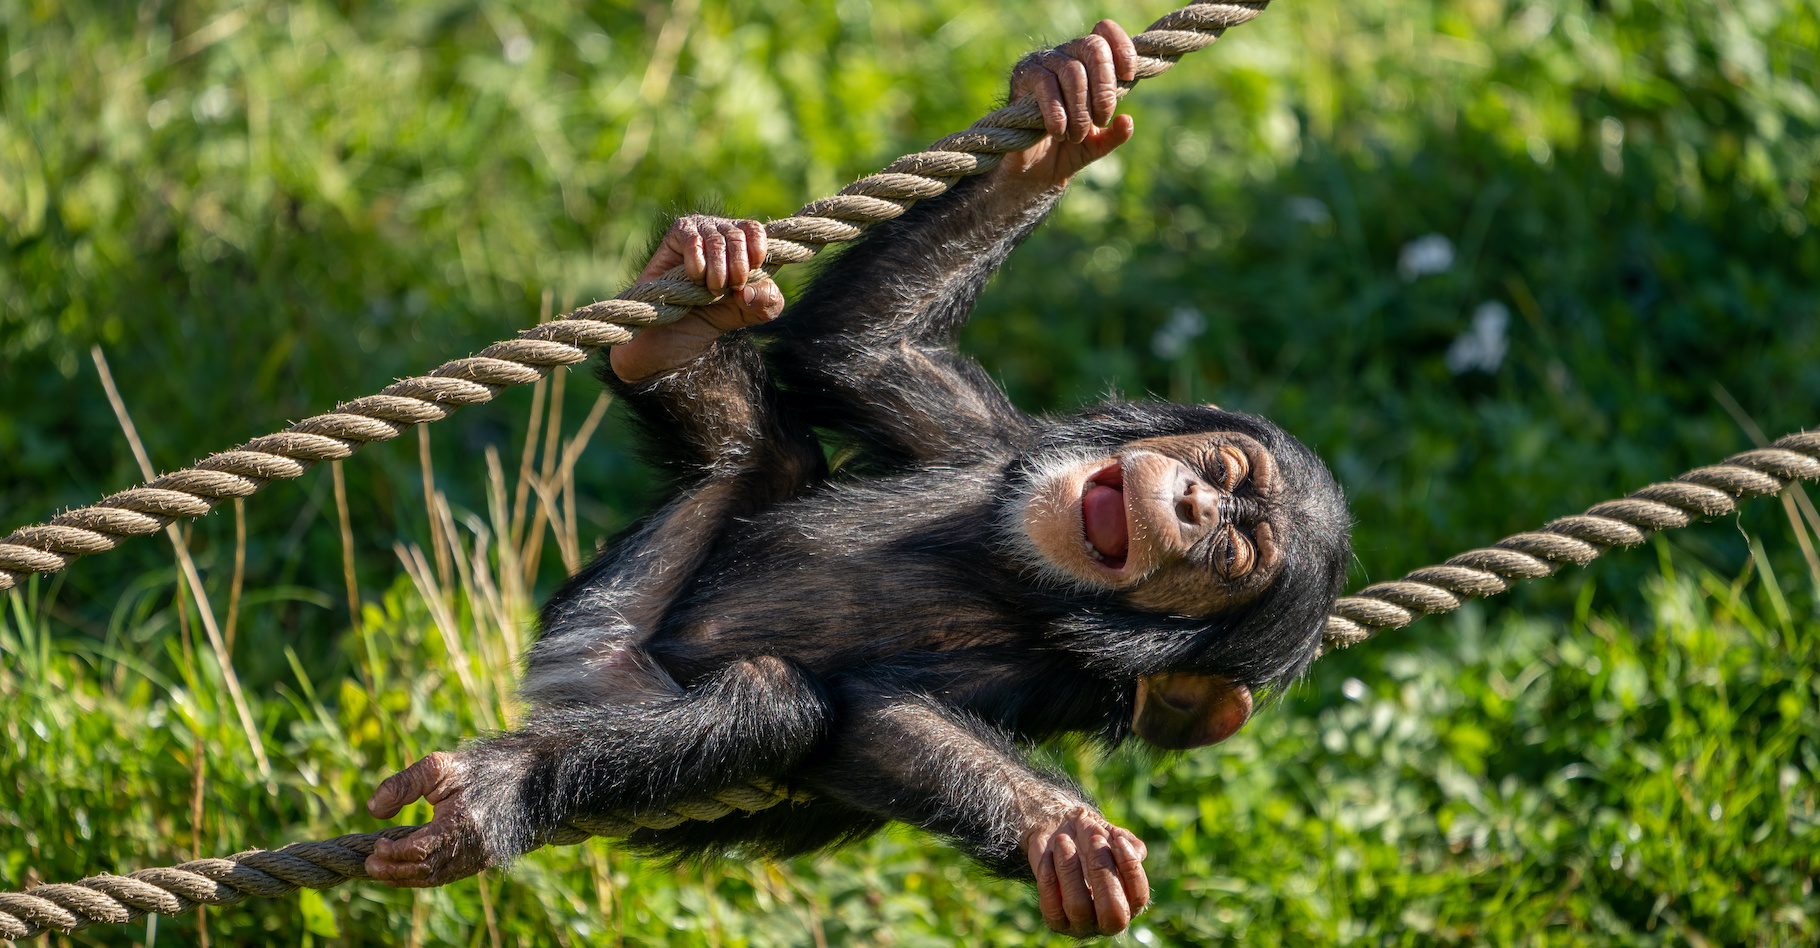 En trois générations, le chimpanzé verus, le chimpanzé de l’Ouest, a perdu plus de 80 % de sa population. En cause, la destruction de son habitat, le trafic de petits en tant qu’animal de compagnie ou encore le trafic de viande. Pourtant ce chimpanzé-là n’est vraiment pas si bête. Des chercheurs le montrent aujourd’hui encore. © PhotosbyPatrick, Adobe Stock